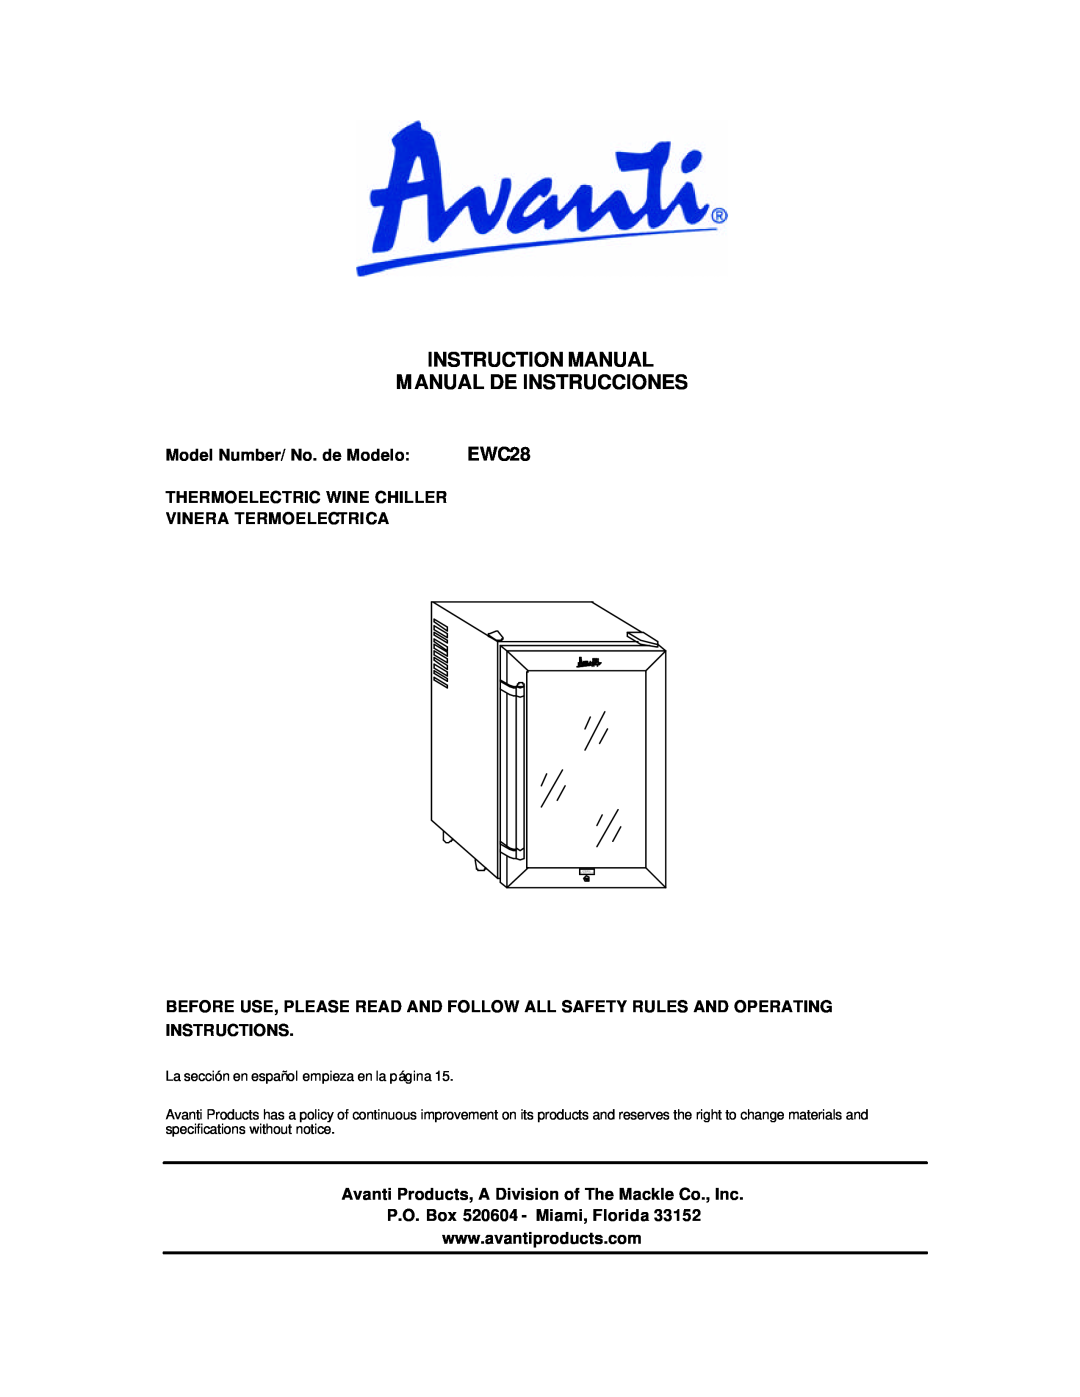 Avanti EWC28 instruction manual Instruction Manual Manual De Instrucciones 